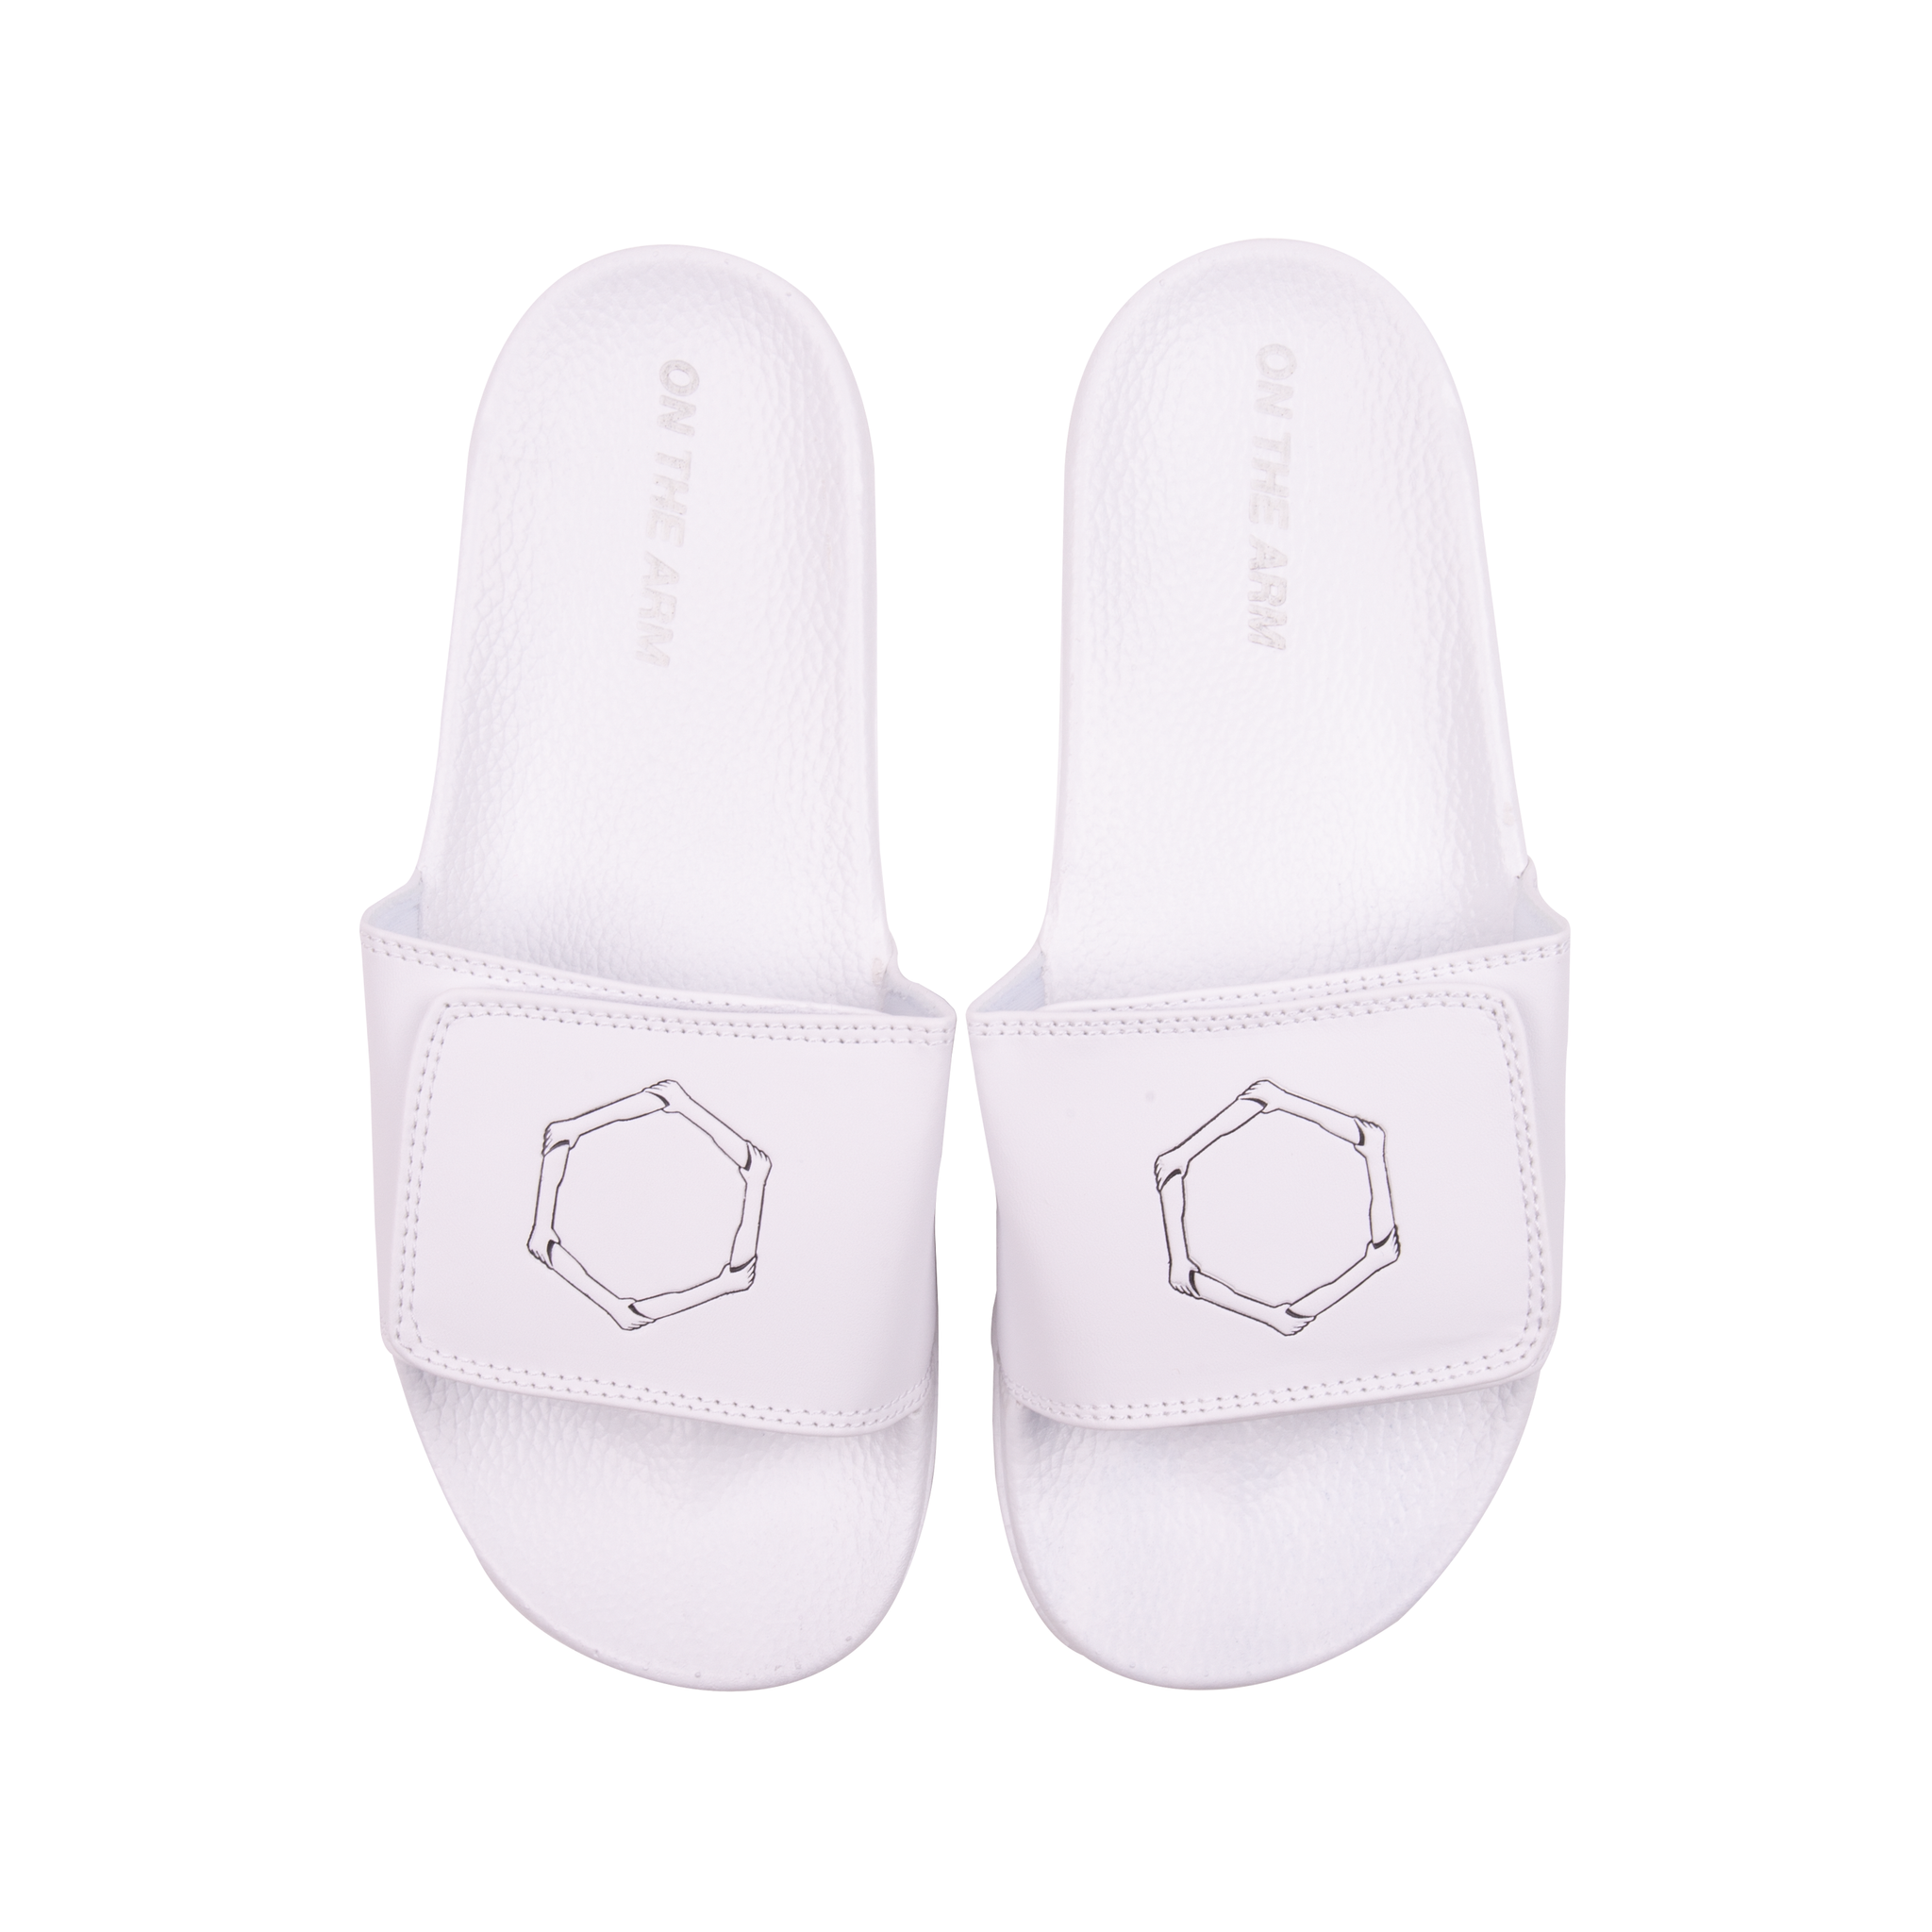 OTA White Sandals